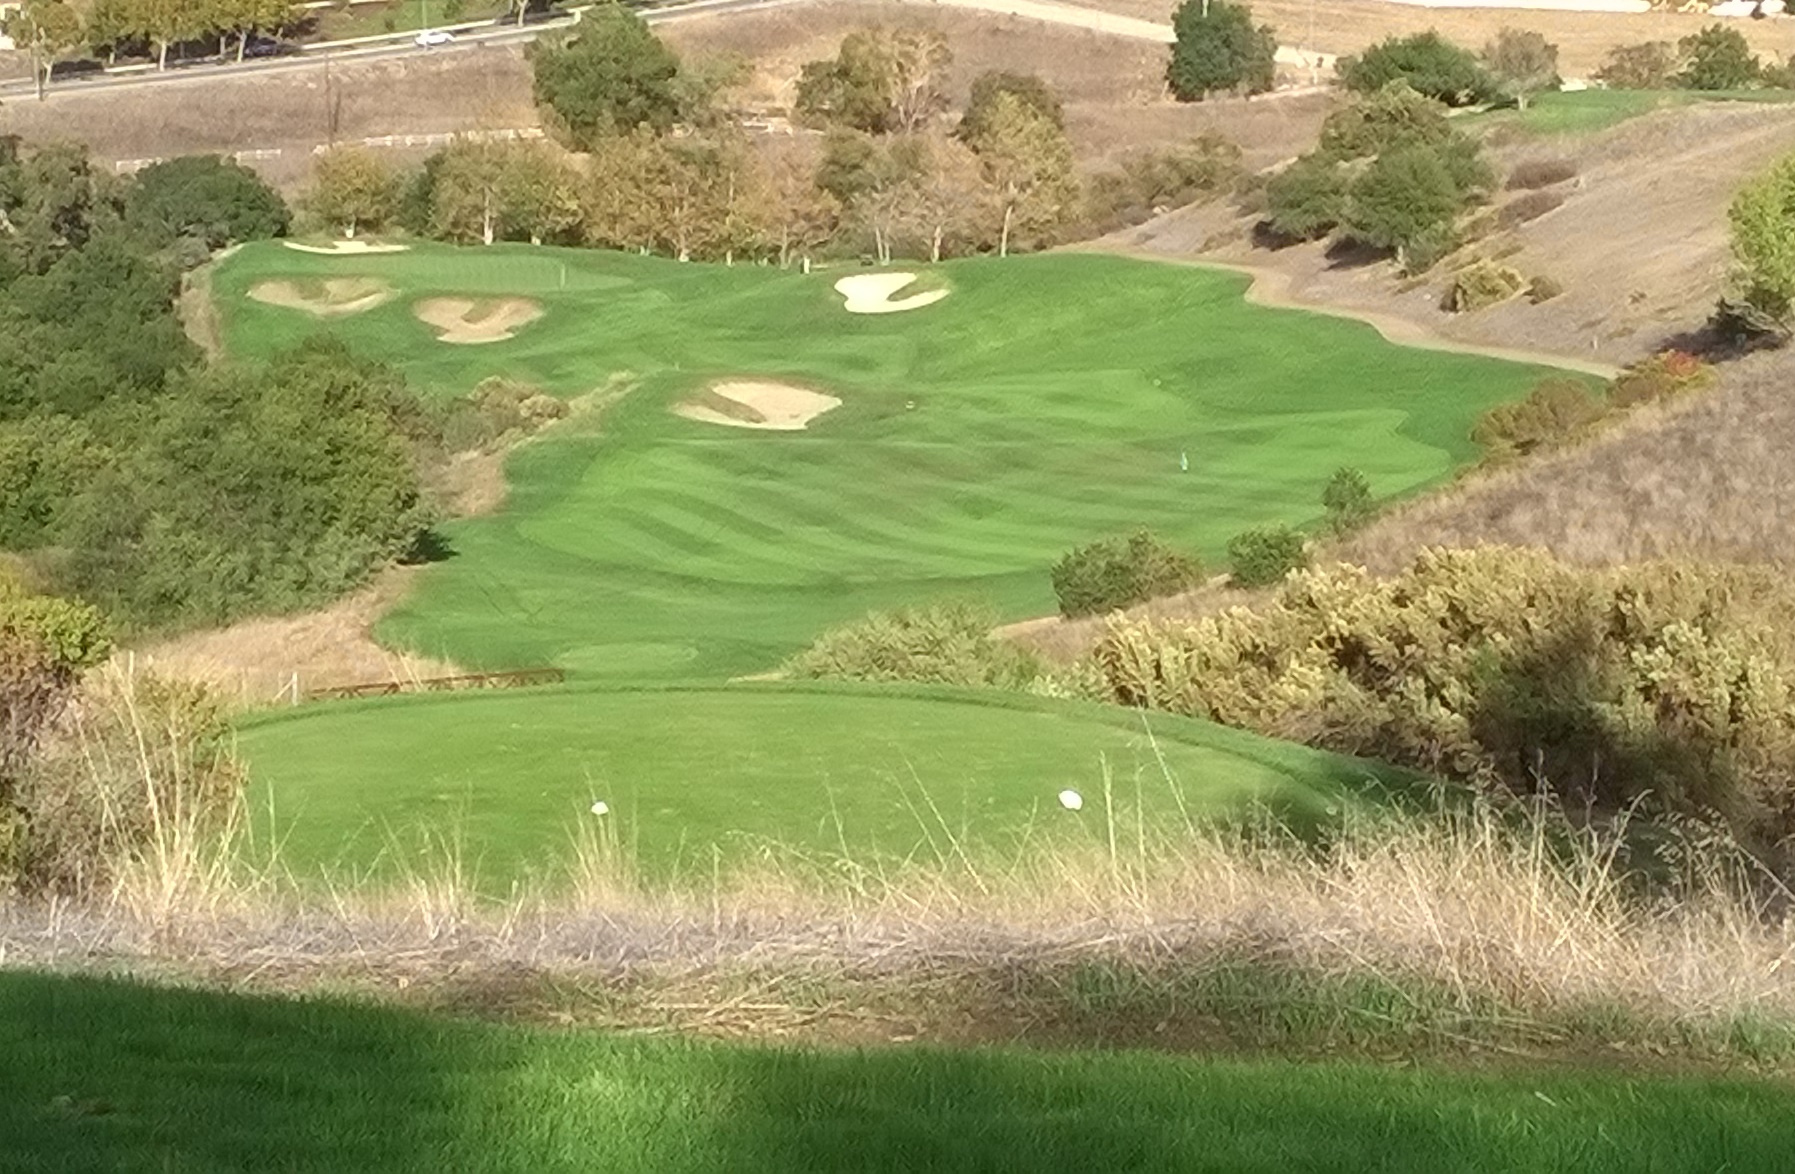 The Ranch Golf Course in San Jose California